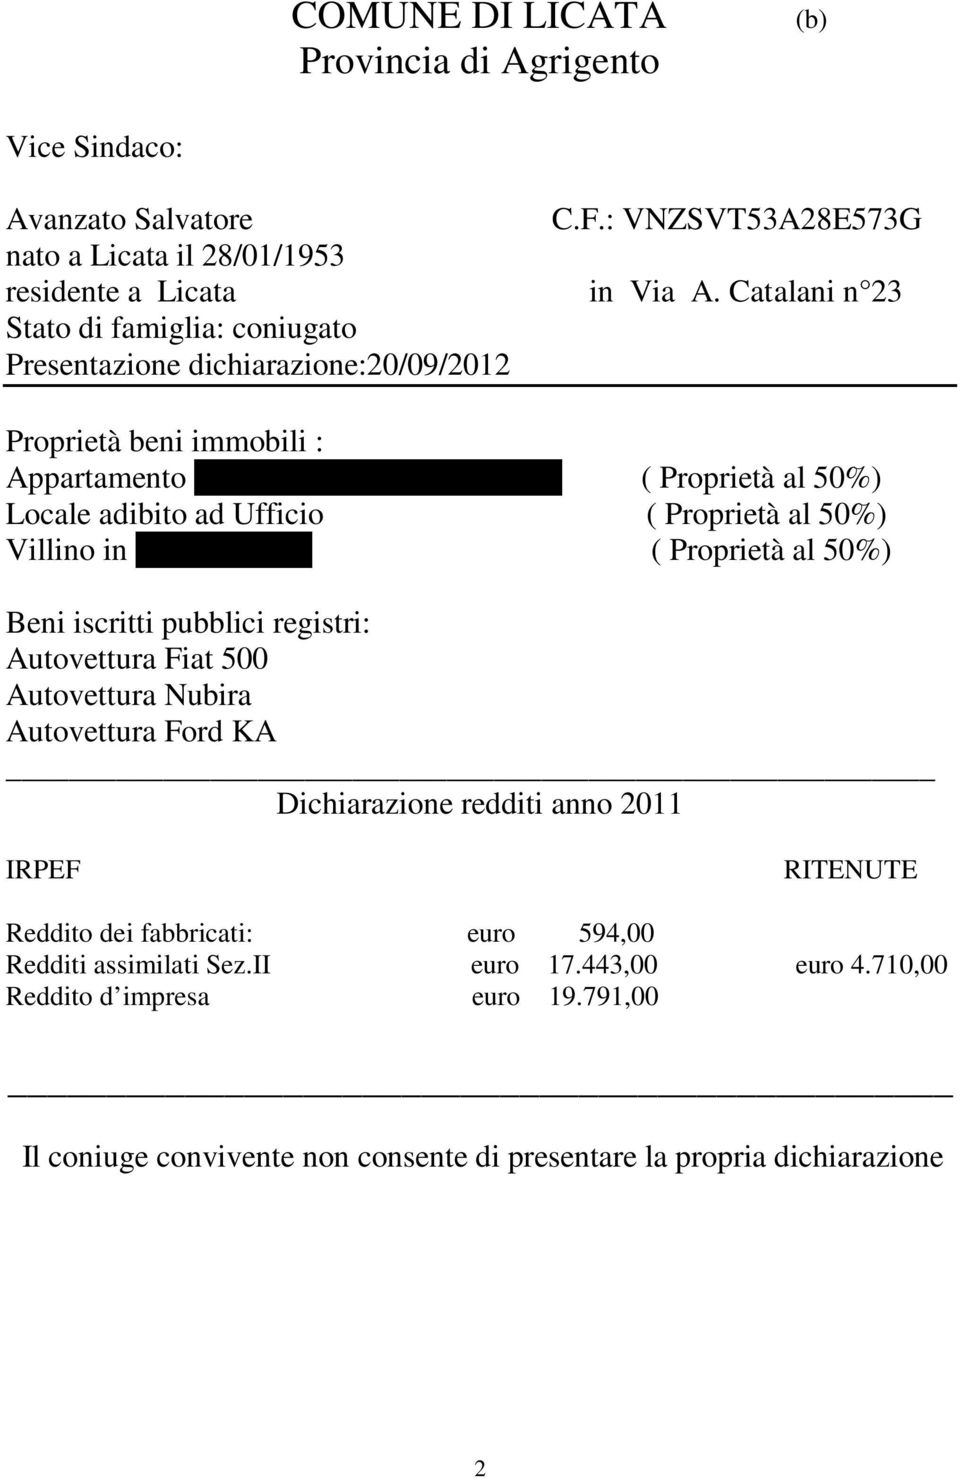 Catalani ( Proprietà al 50%) Locale adibito ad Ufficio ( Proprietà al 50%) Villino in C.